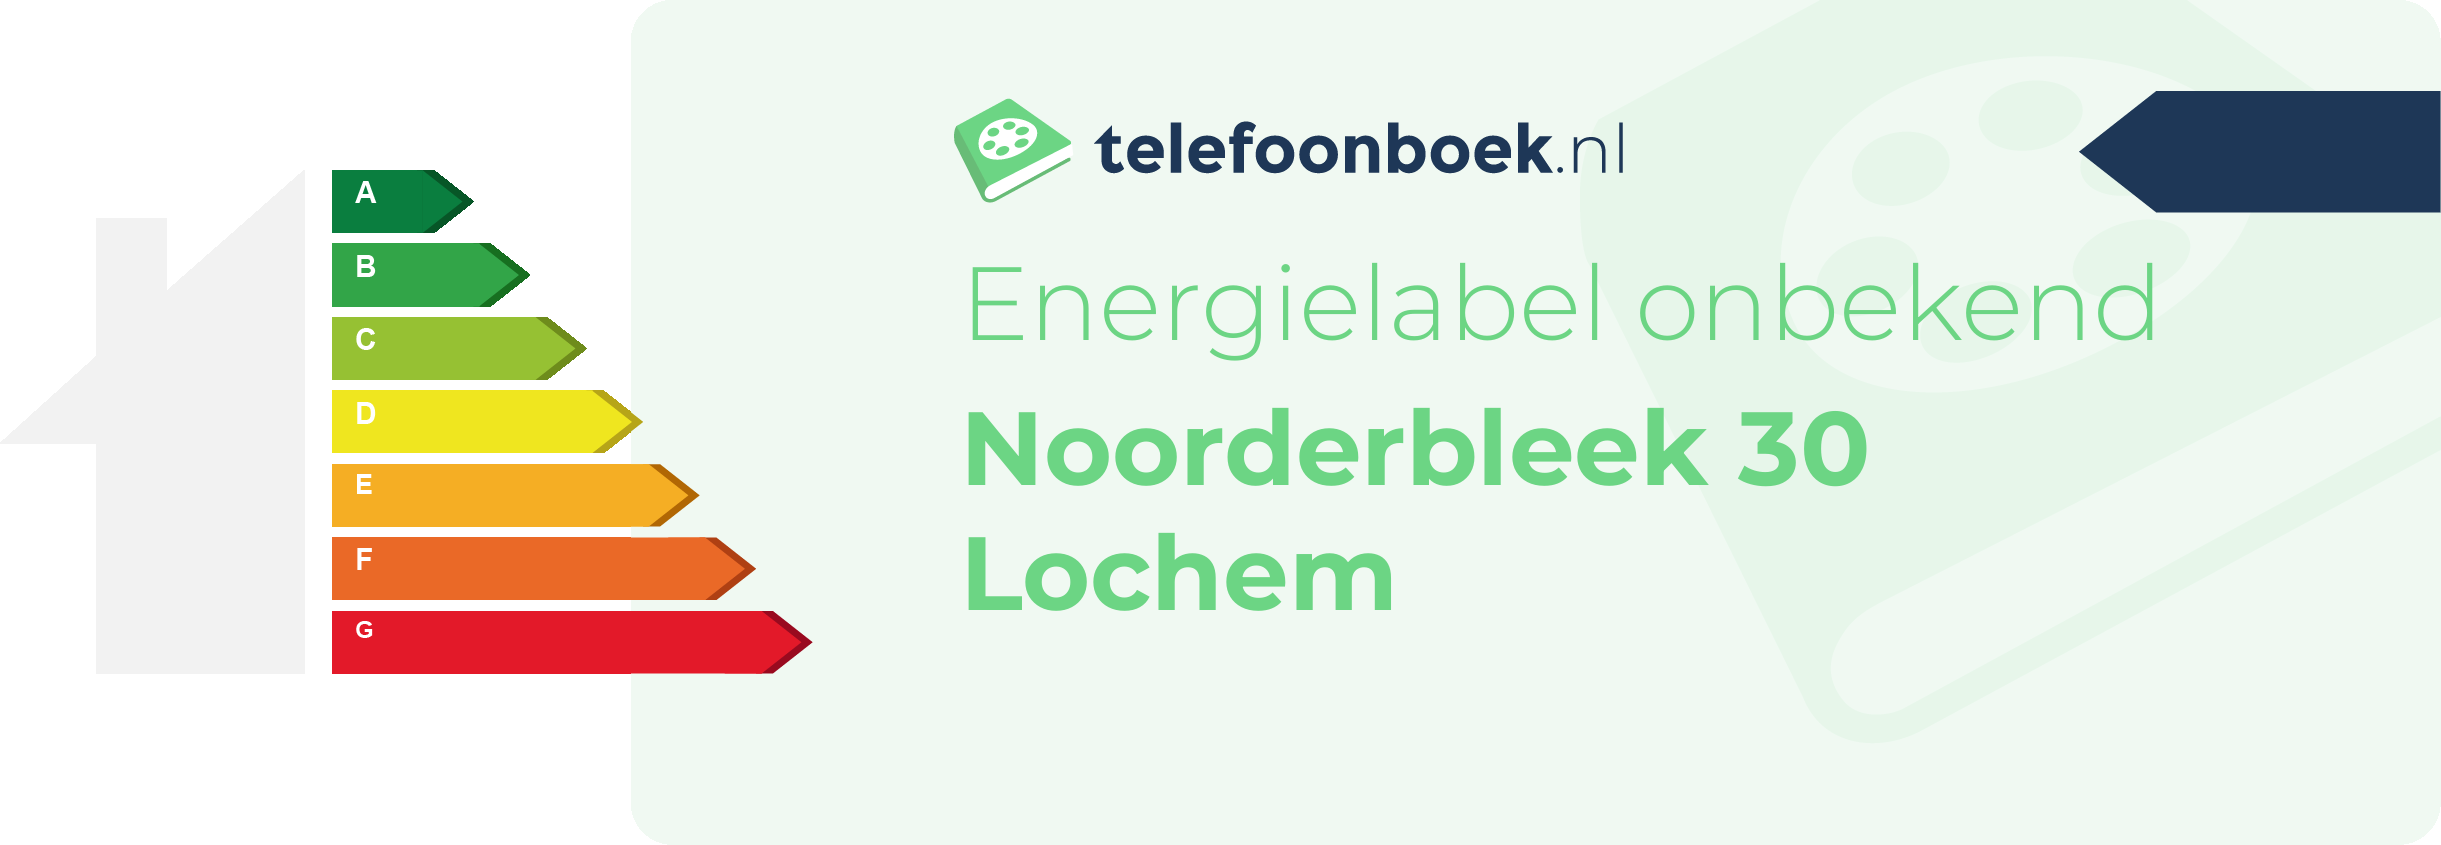 Energielabel Noorderbleek 30 Lochem